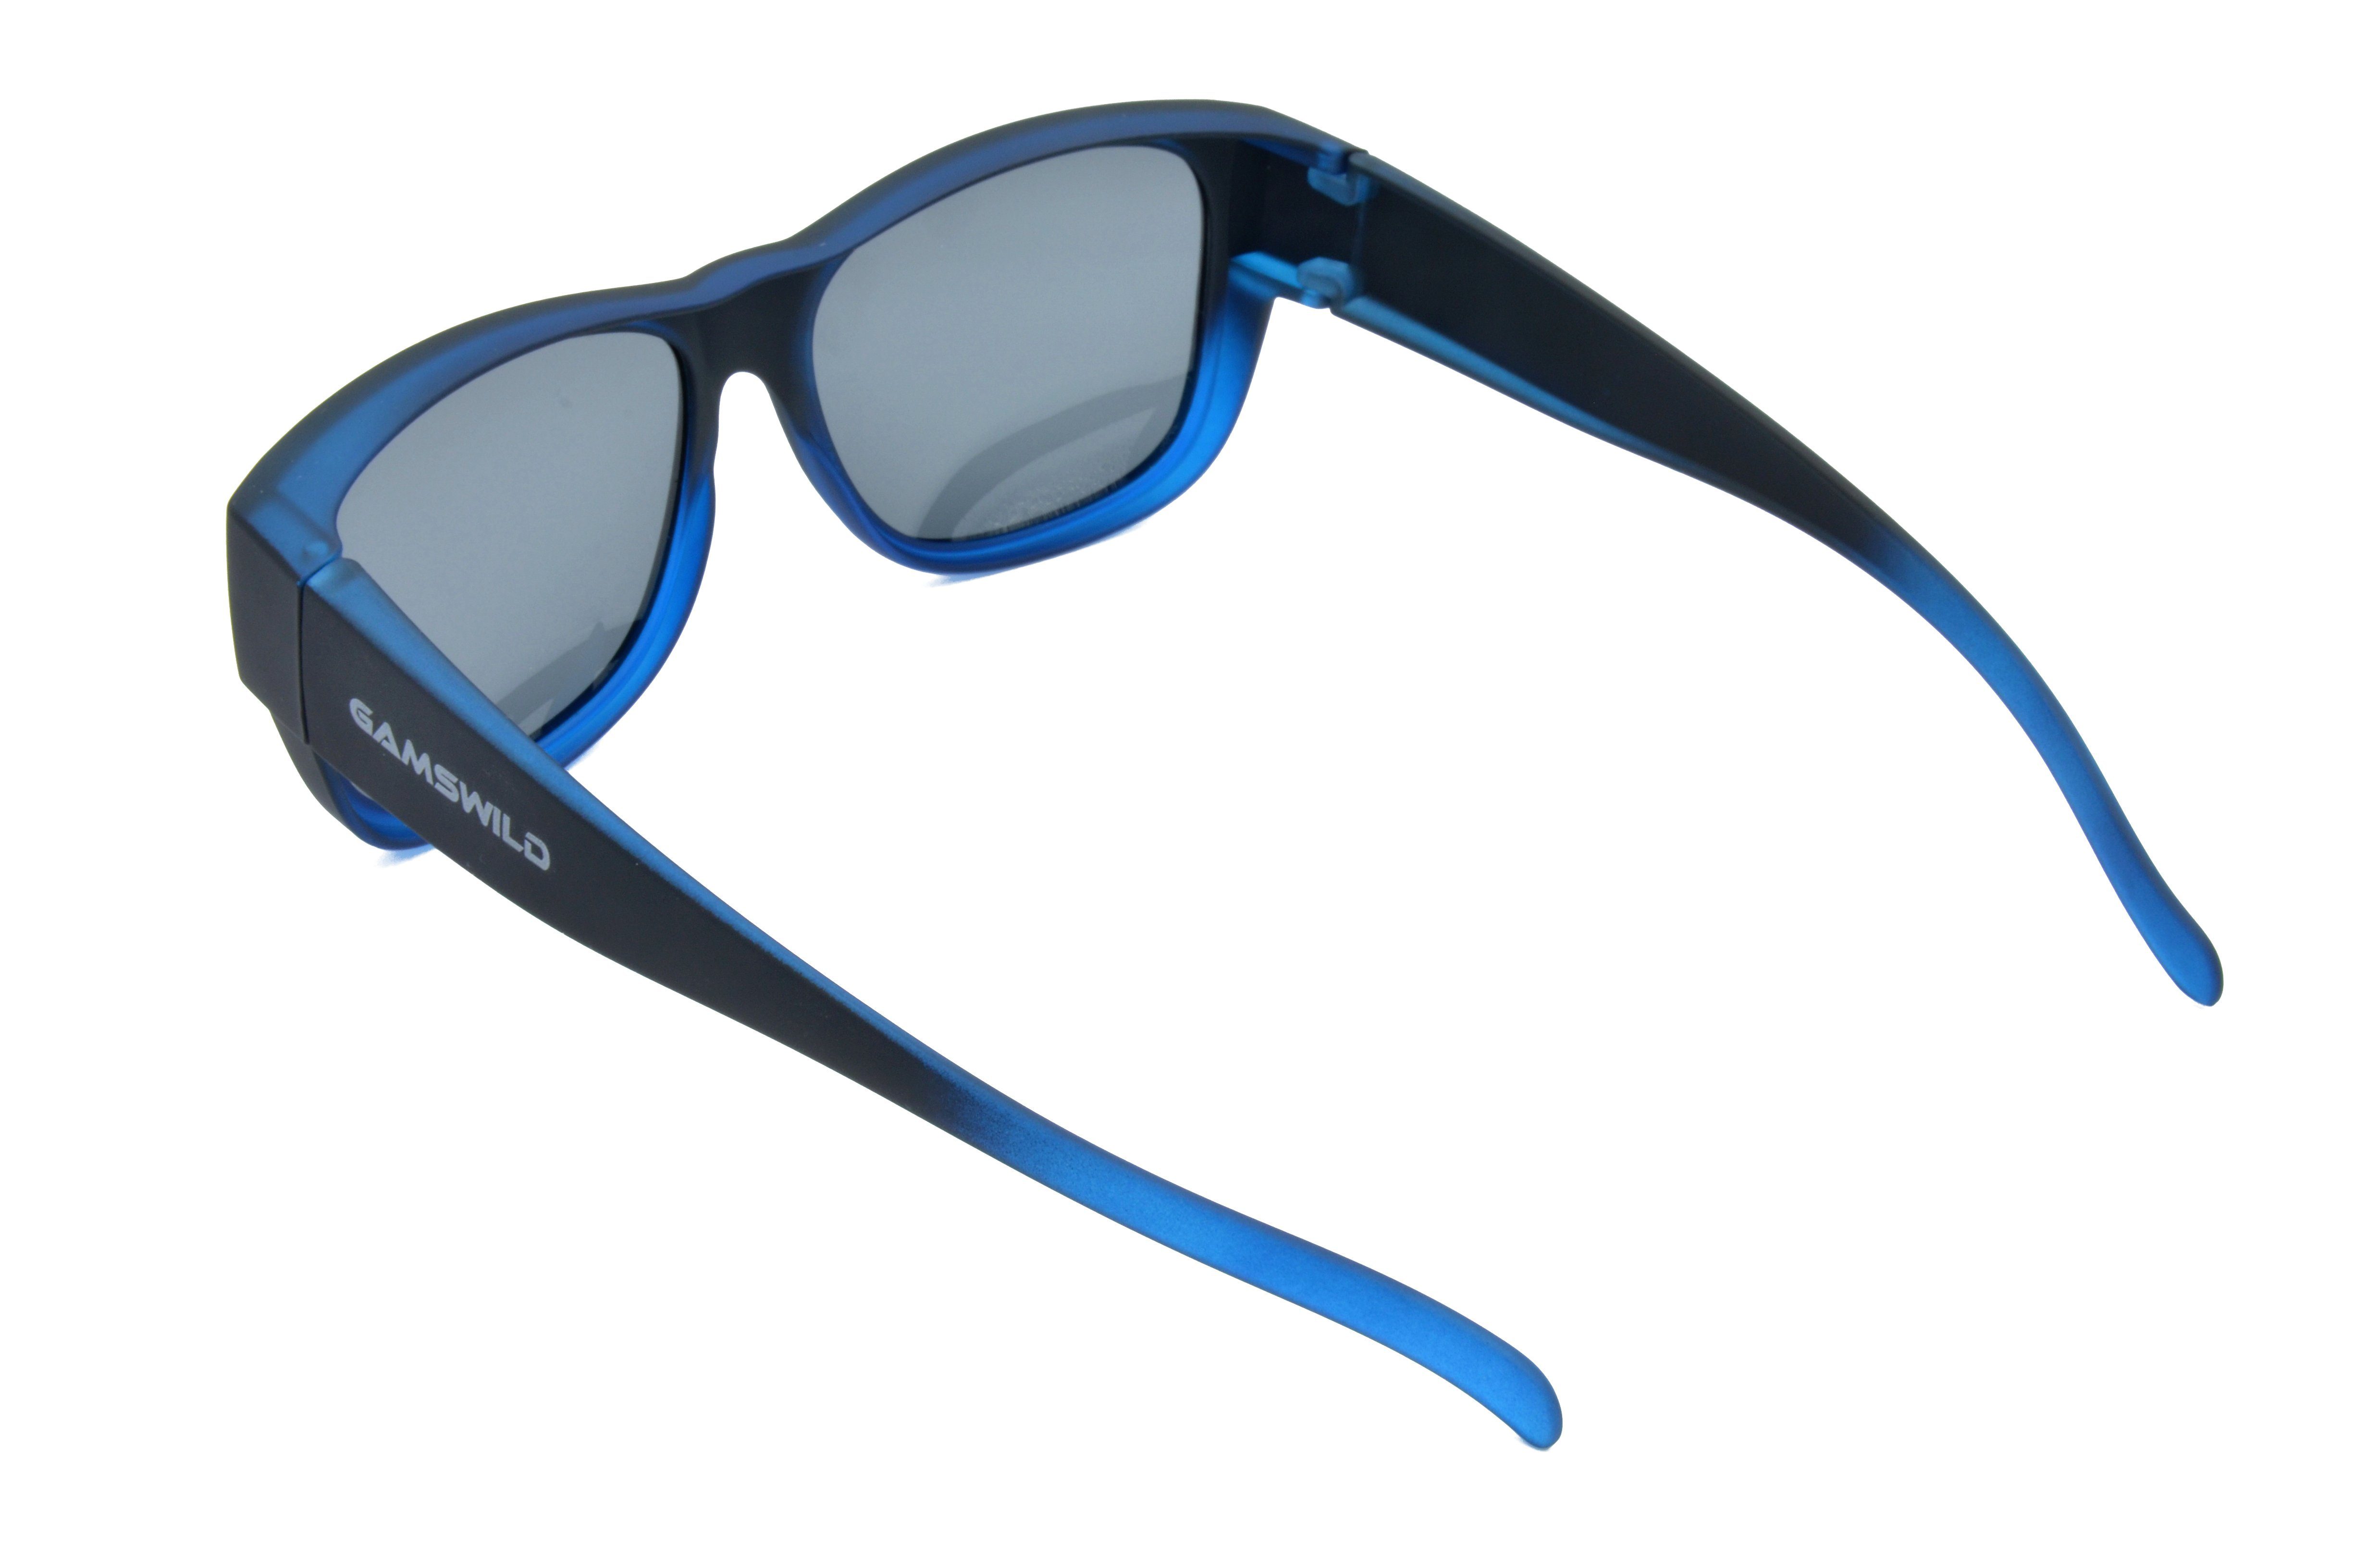 Rubbertouchbeschichtung Damen Sonnenbrille Sportbrille Sportbrille Überbrille unisex, blau, beere, G15, Passform, schwarz WS6022 universelle Gamswild Herren,